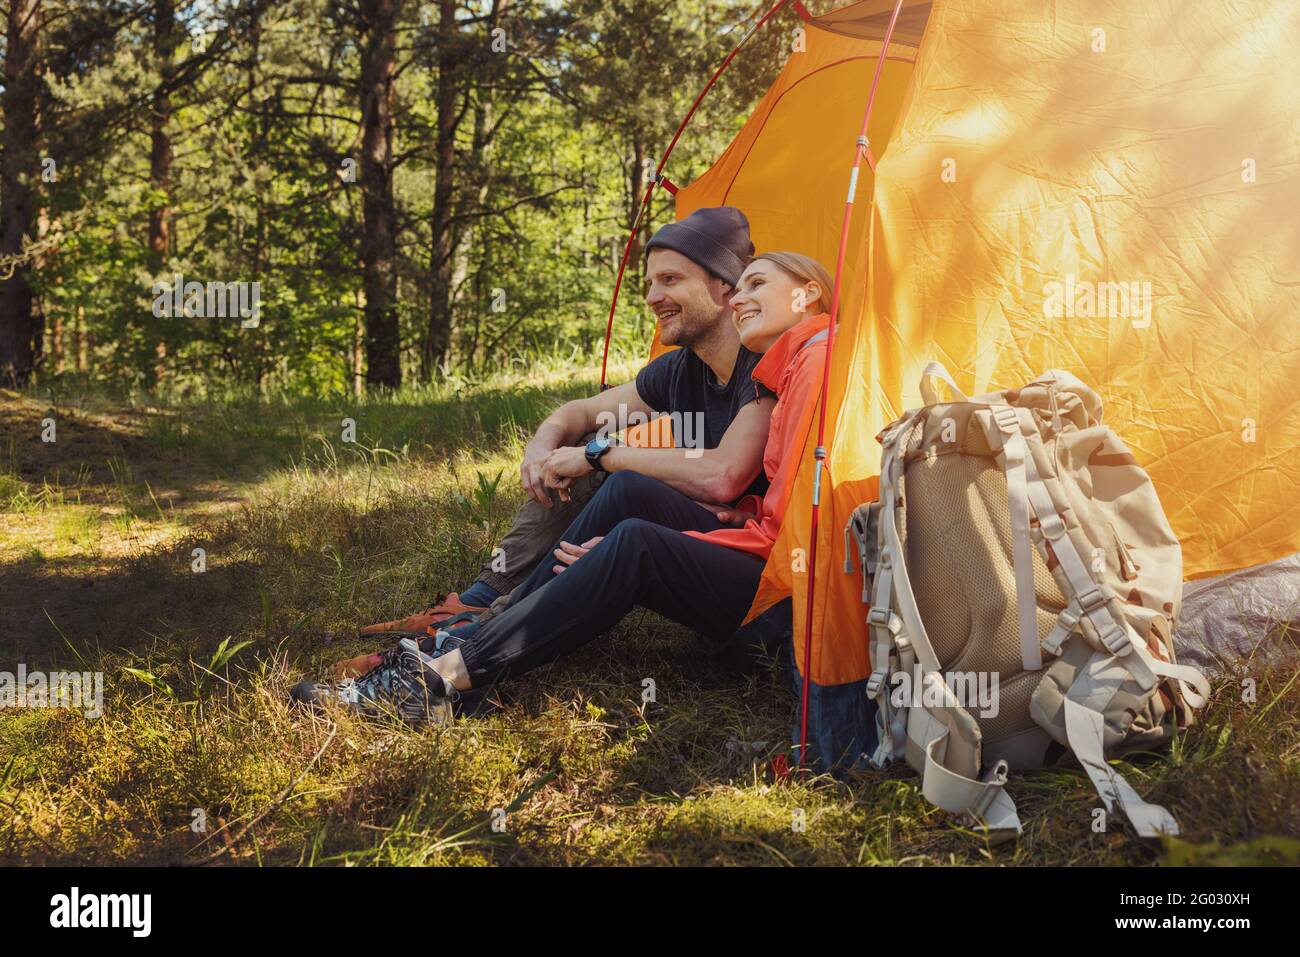 viaje de camping - pareja joven sentada en tienda de campaña en el camping y relajarse después de la caminata Foto de stock